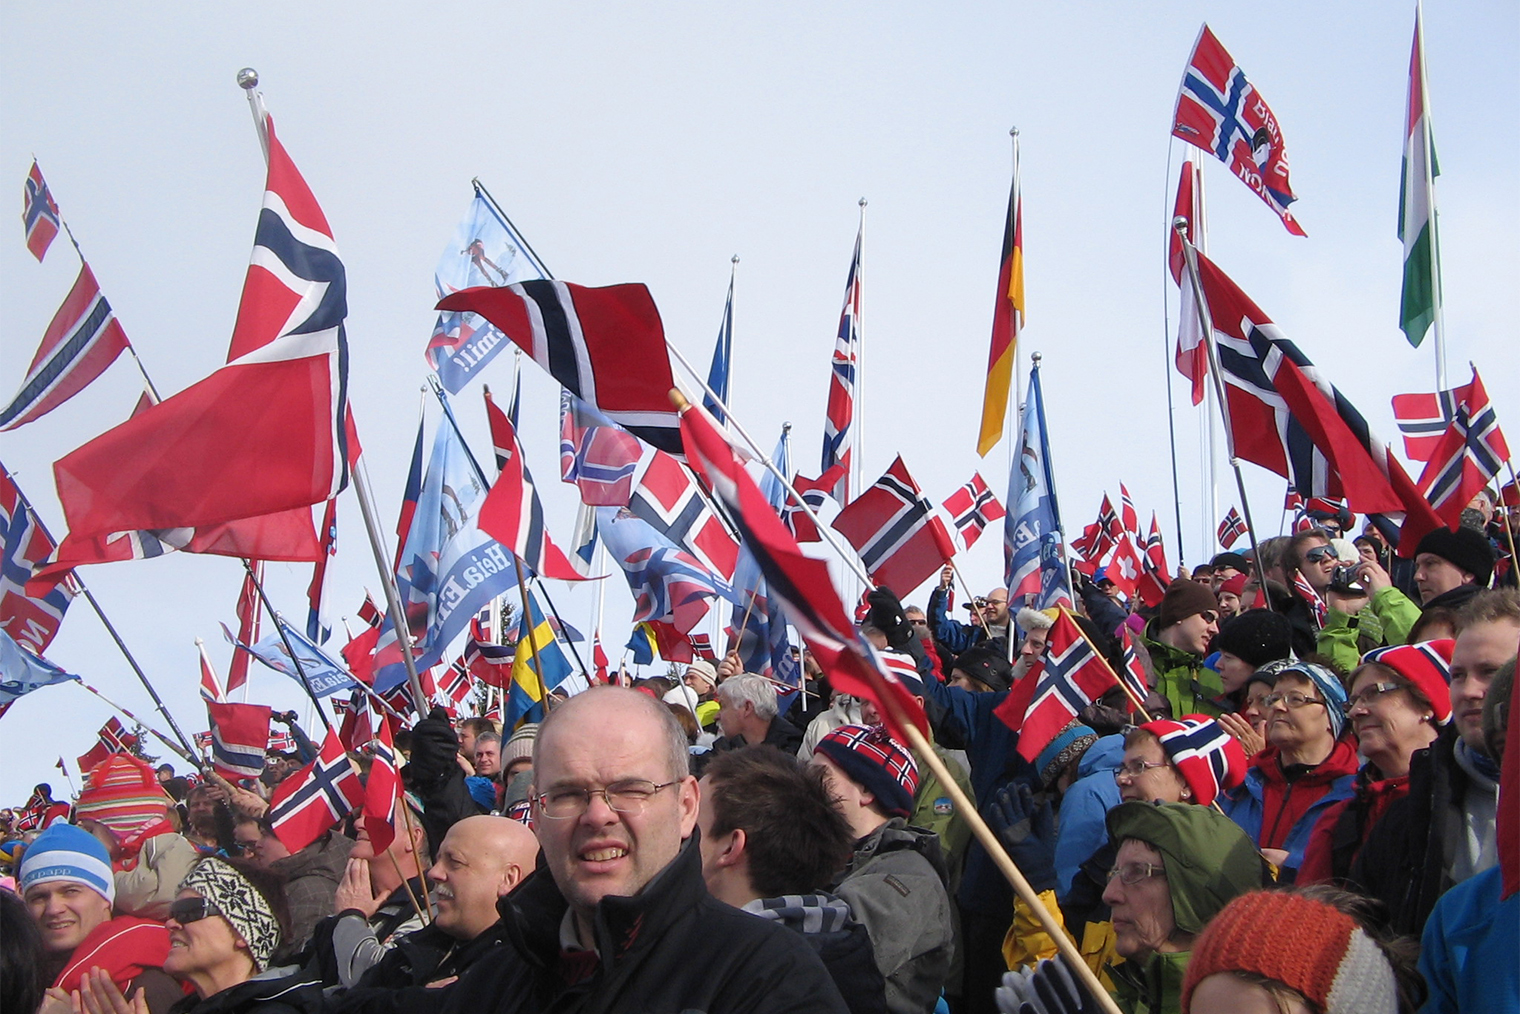 Тронхейм, Норвегия, 2009 год. Привычный «Холменколлен» в Осло был на реконструкции, и этап перенесли в Тронхейм. Полный стадион норвежских флагов